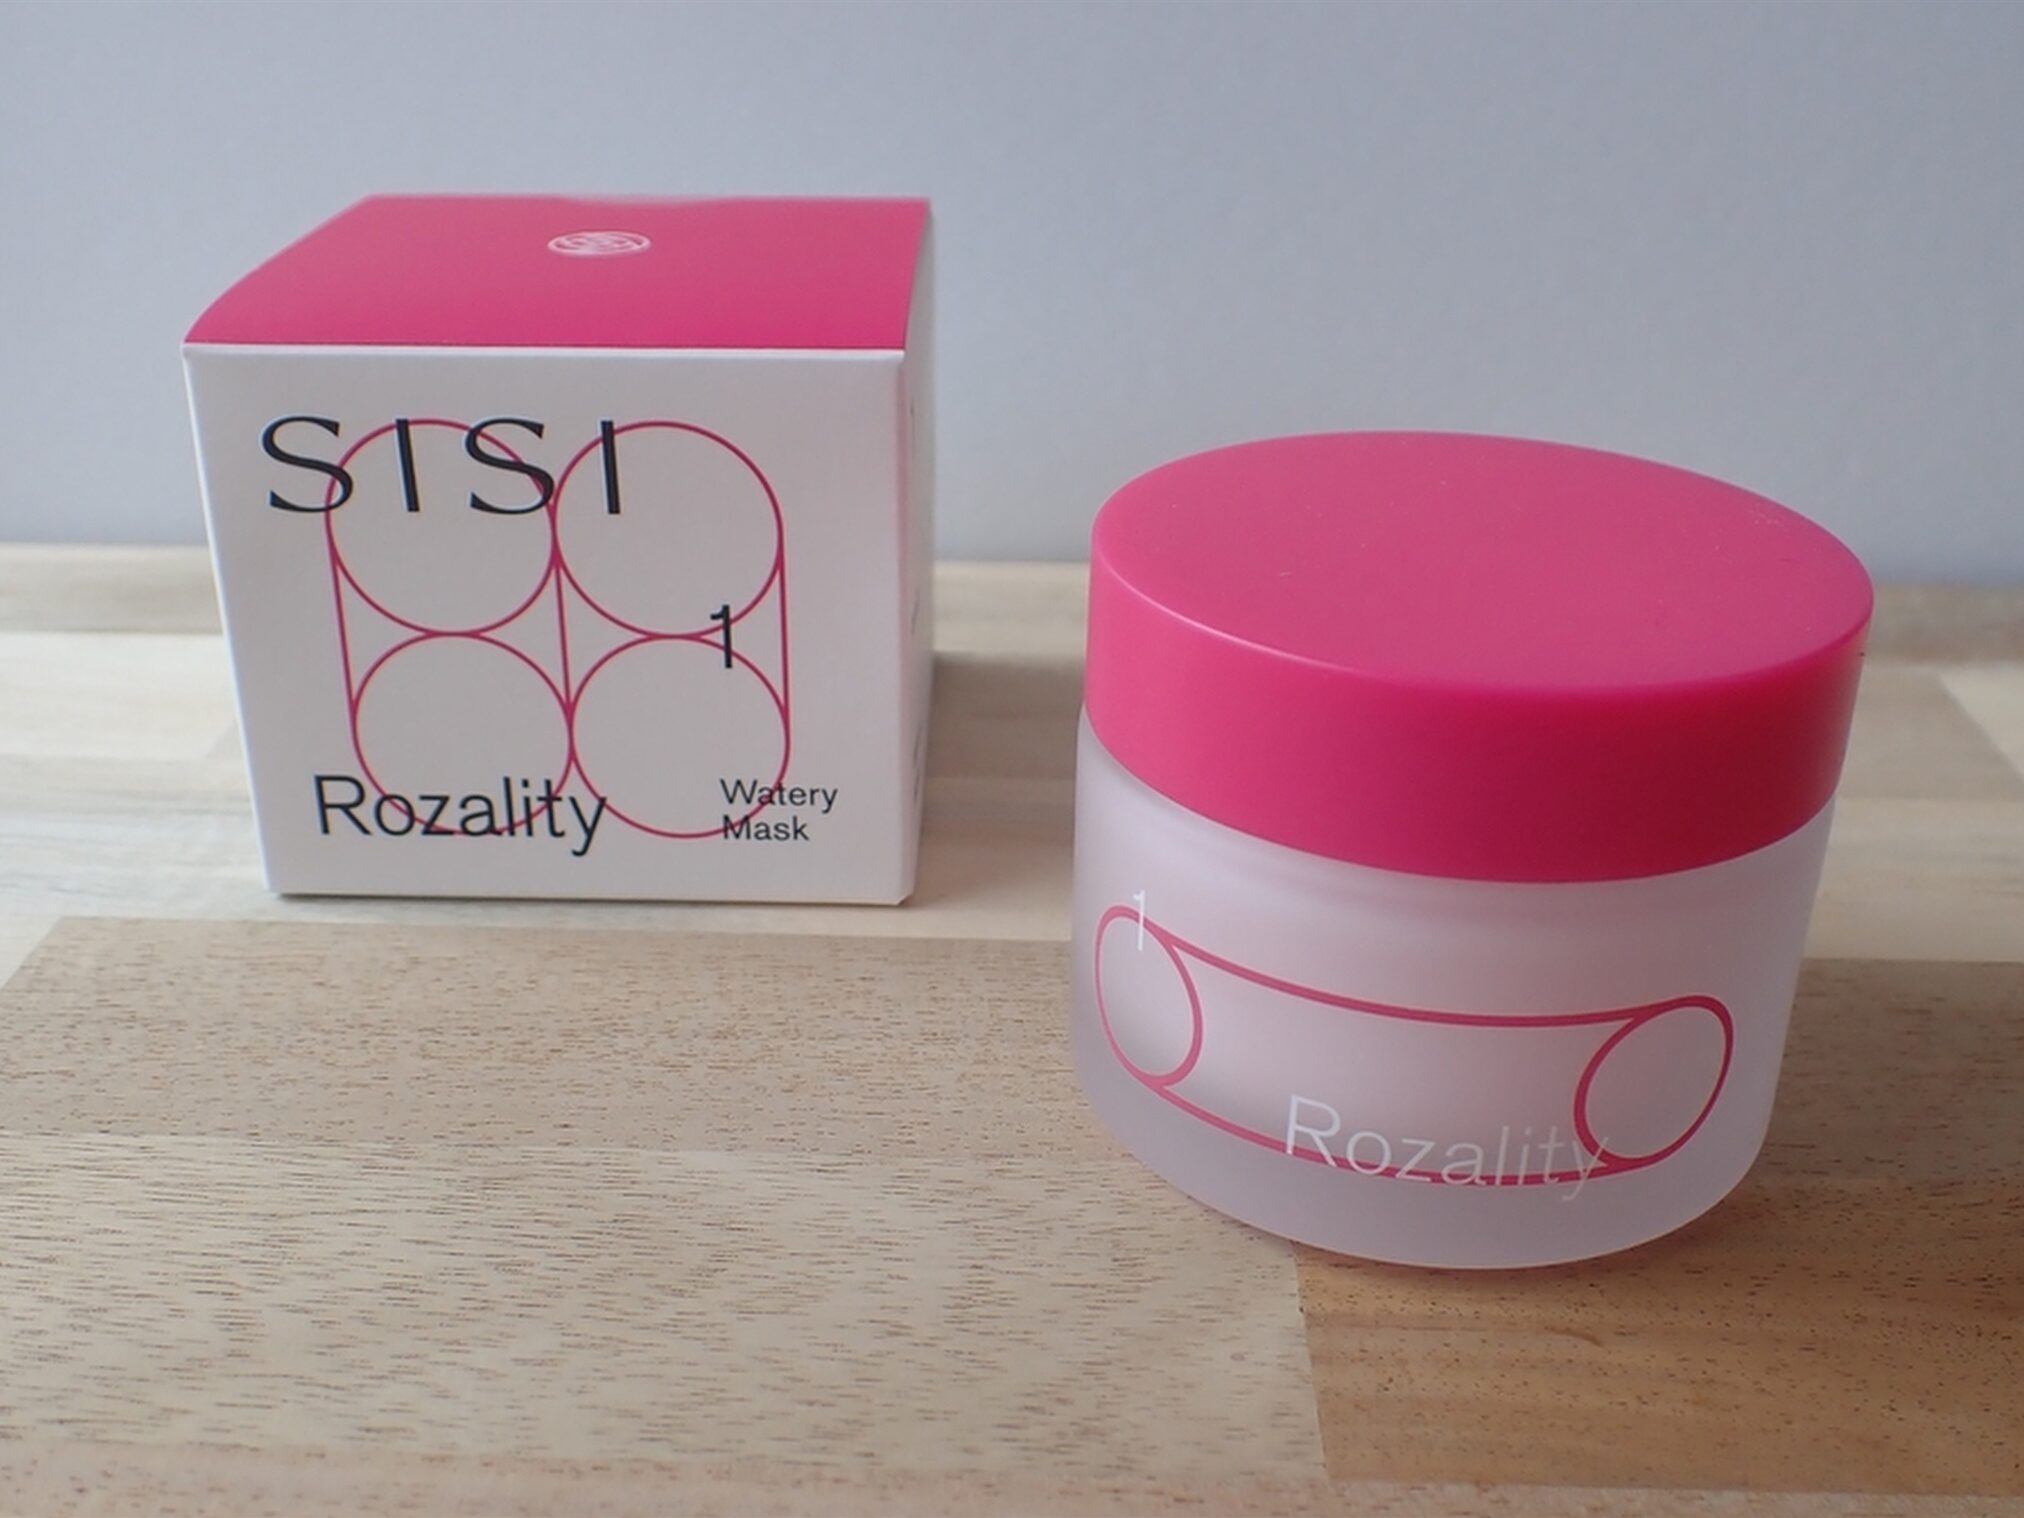 株式会社SISI Rozality ロザリティ ウォータリーマスク パッケージの箱と容器の写真